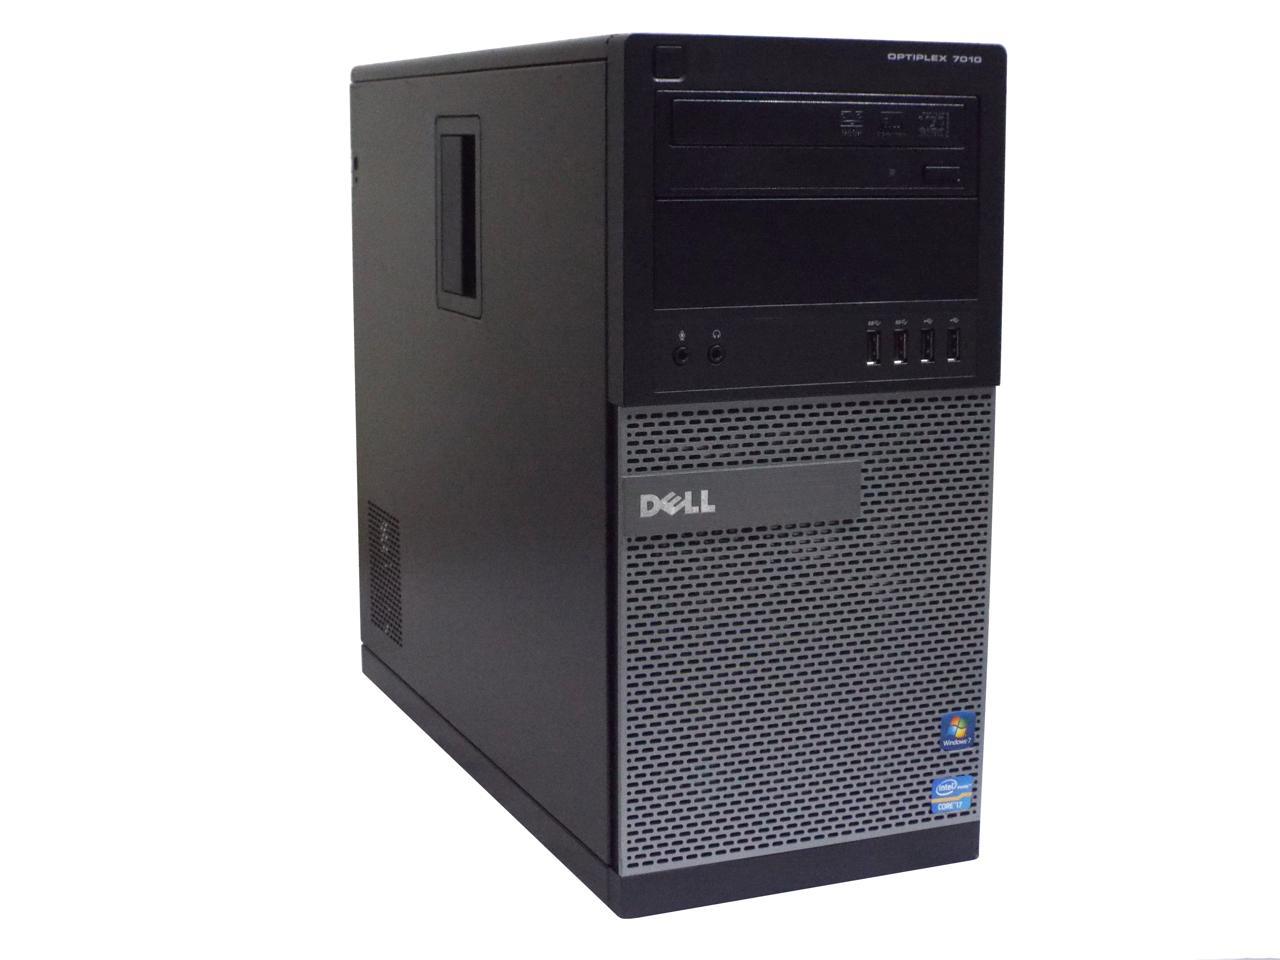 Dell OptiPlex 7010 MT Desktop PC, Intel Core i7-3770 3.4GHz, 8GB DDR3 RAM, 500GB HDD, Win-7 Pro x64